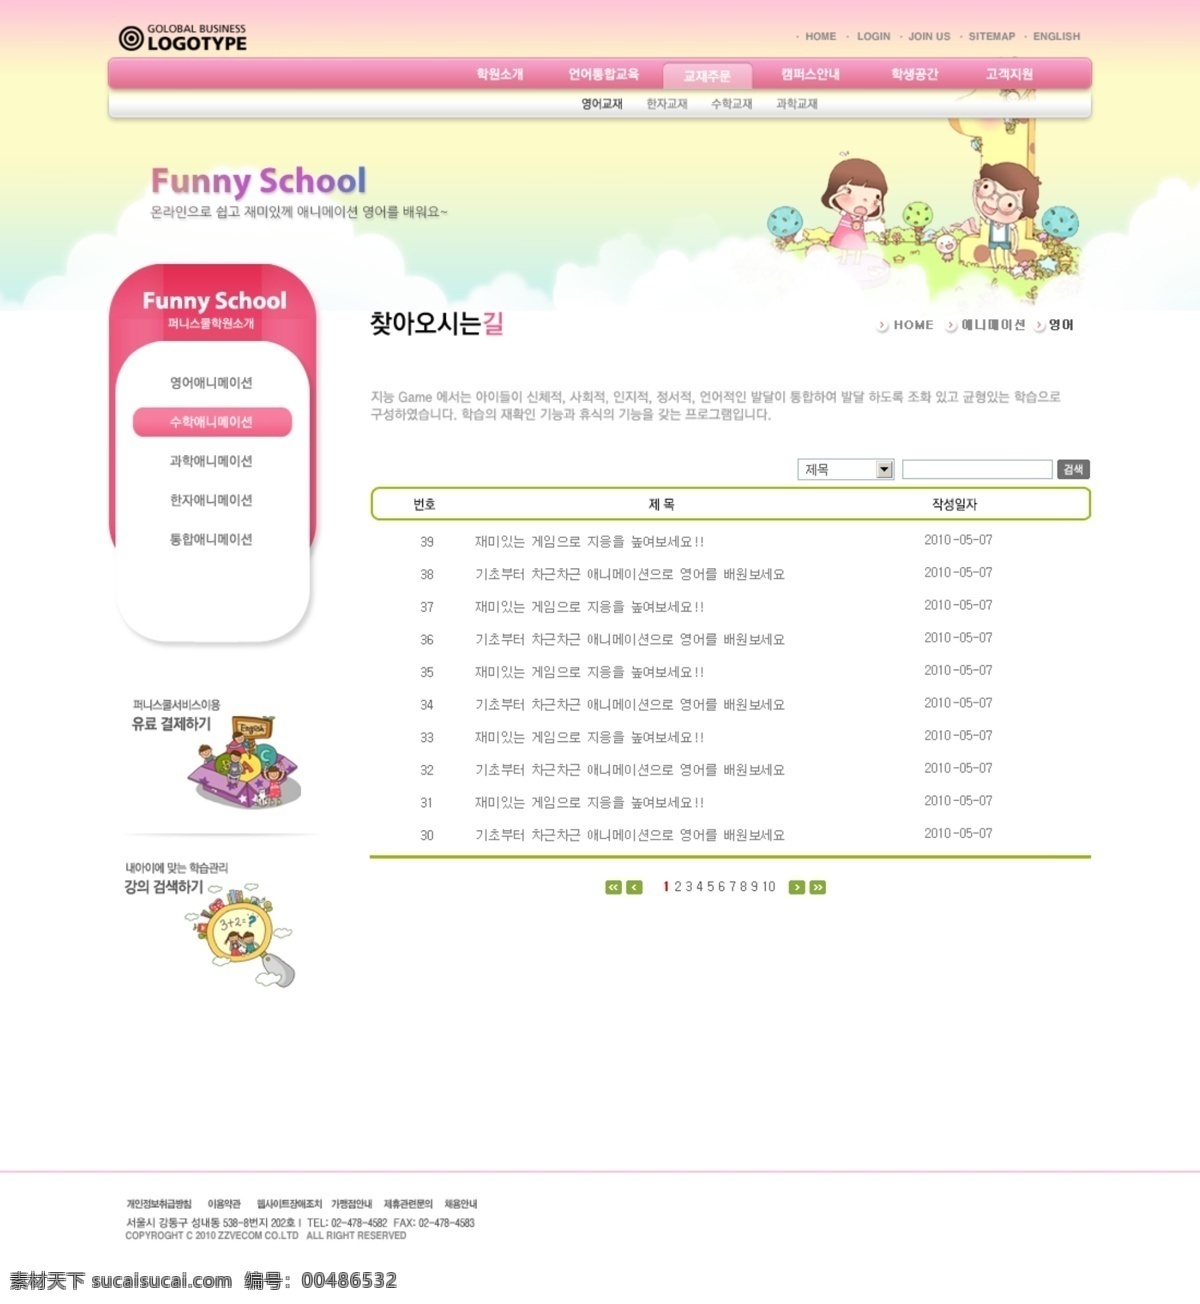 韩国 韩国模板 网页模板 源文件 教育培训 类 儿童 学校教育 培训机构 网页素材